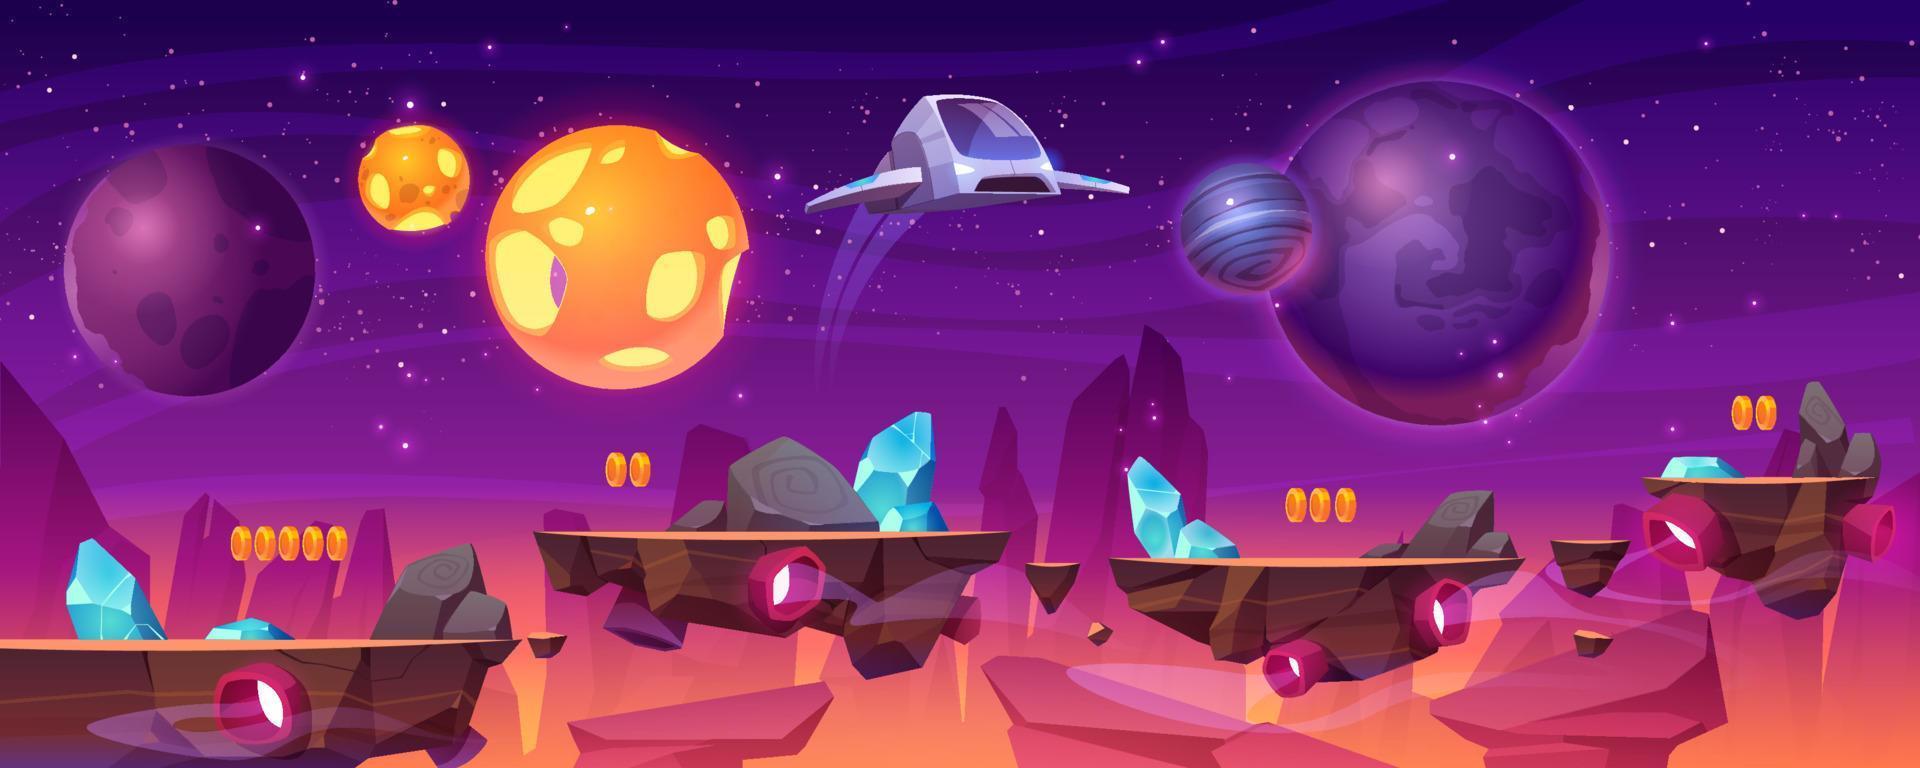 plataforma de jogo espacial, desenho animado 2d gui planeta alienígena vetor